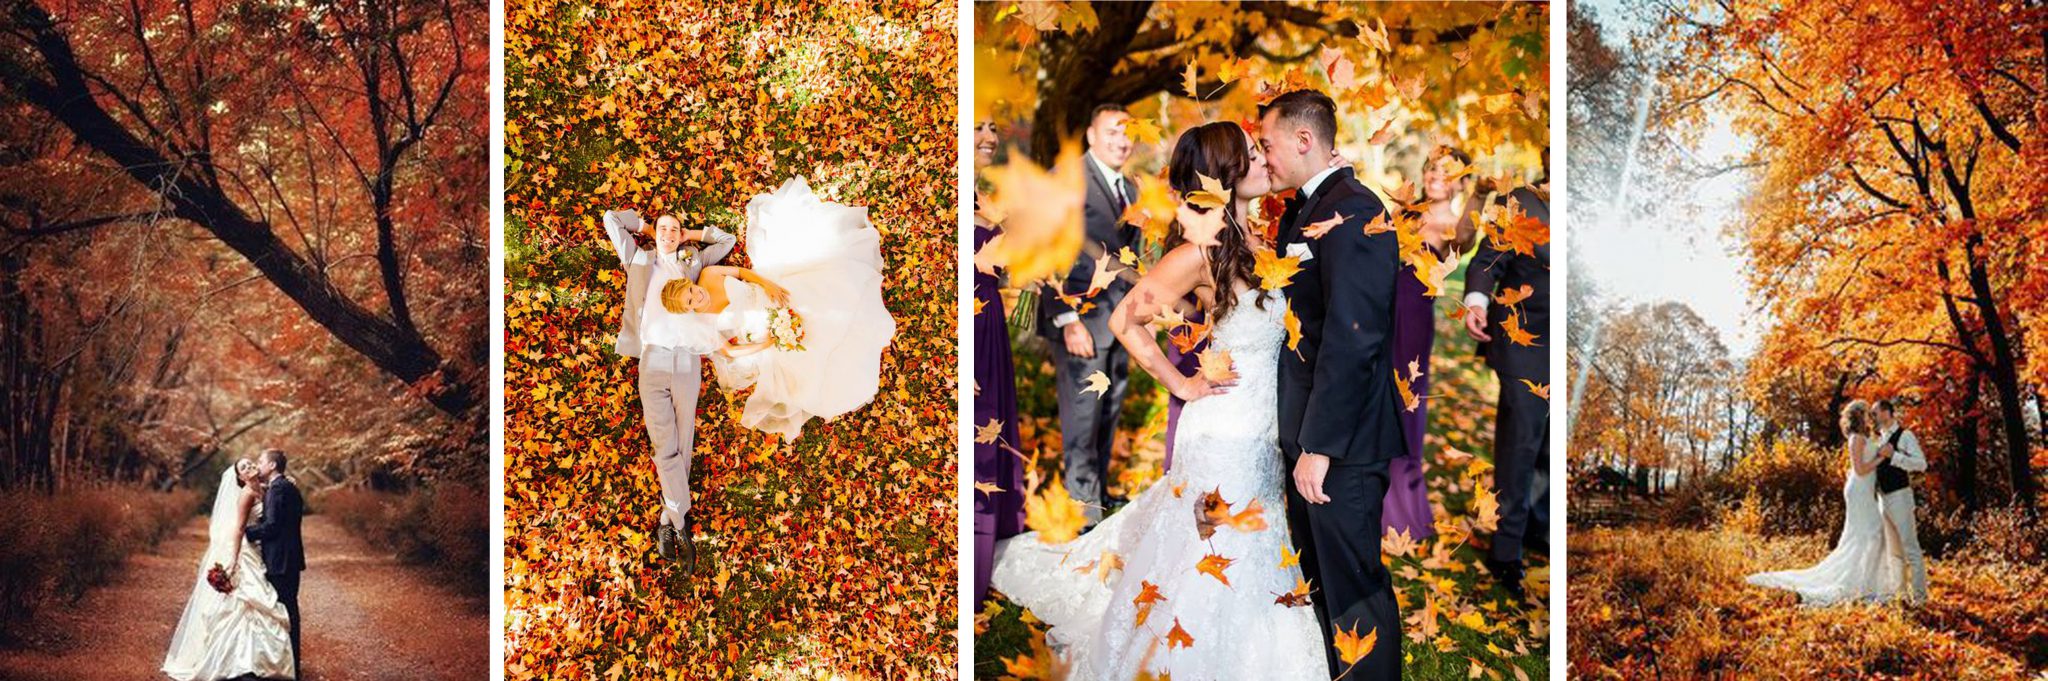 Decoración de bodas de otoño e invierno - Foto 1